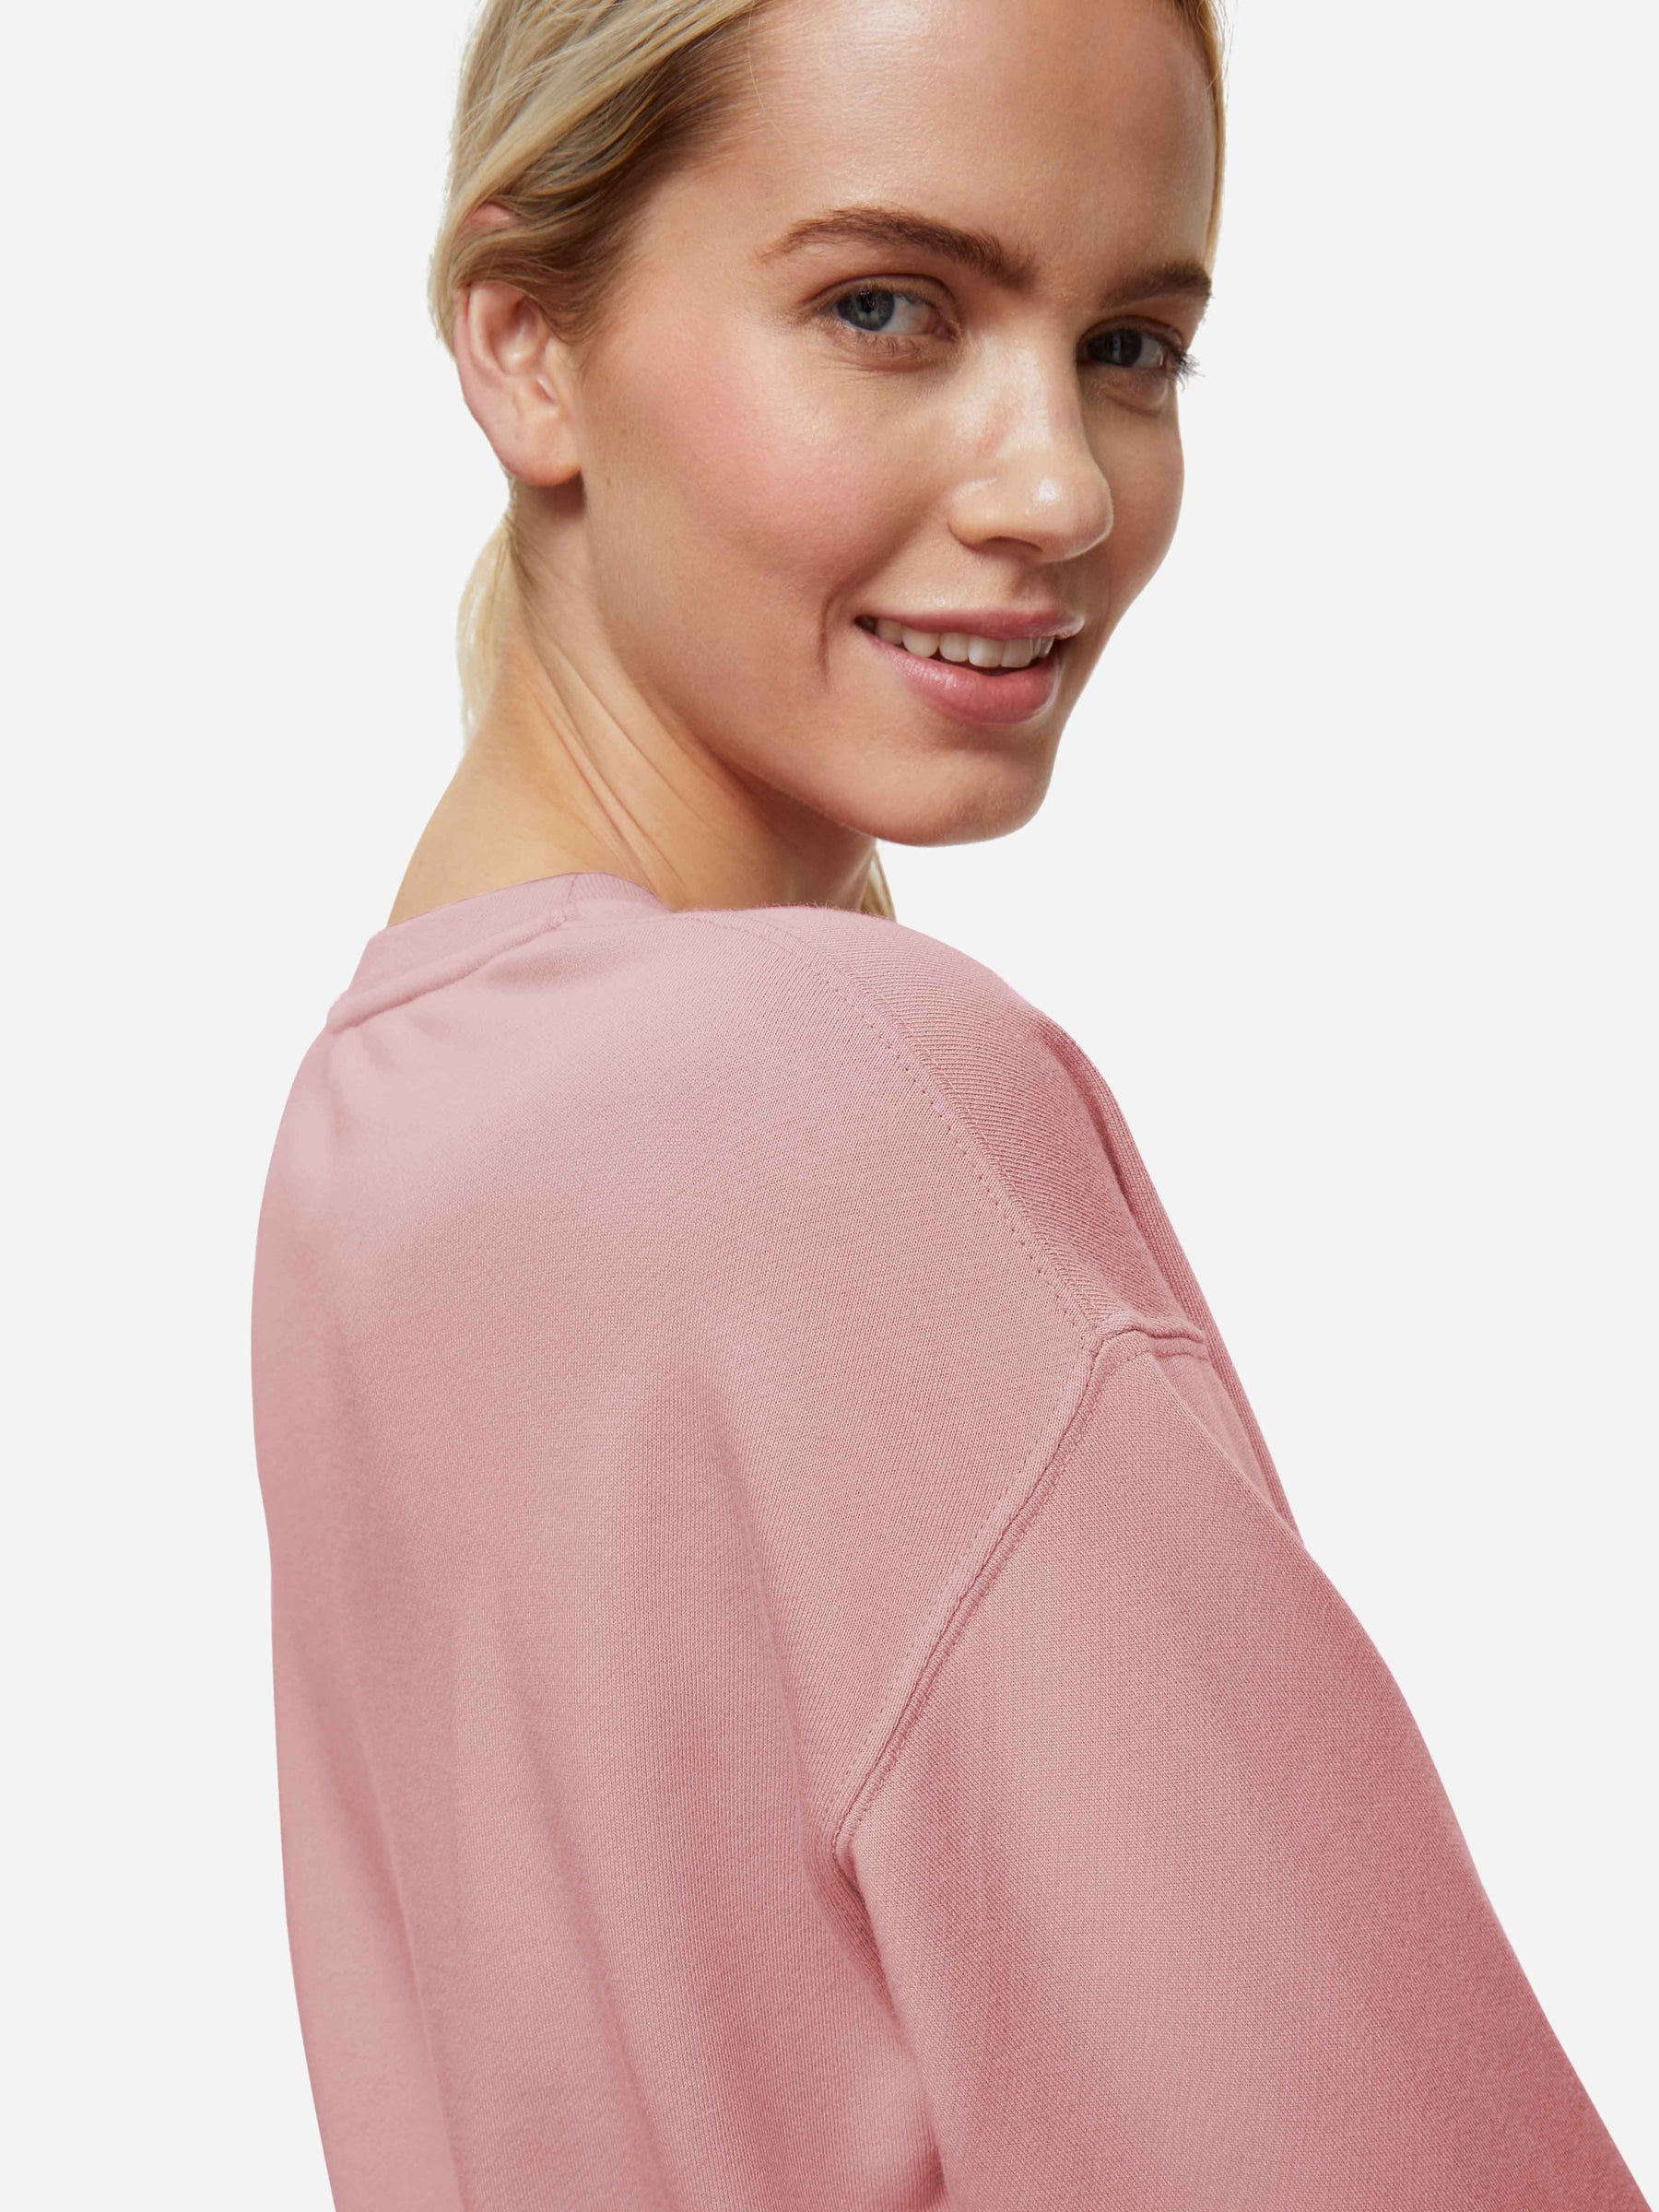 Women's Sweatshirt Quinn Cotton Modal Rose Pink